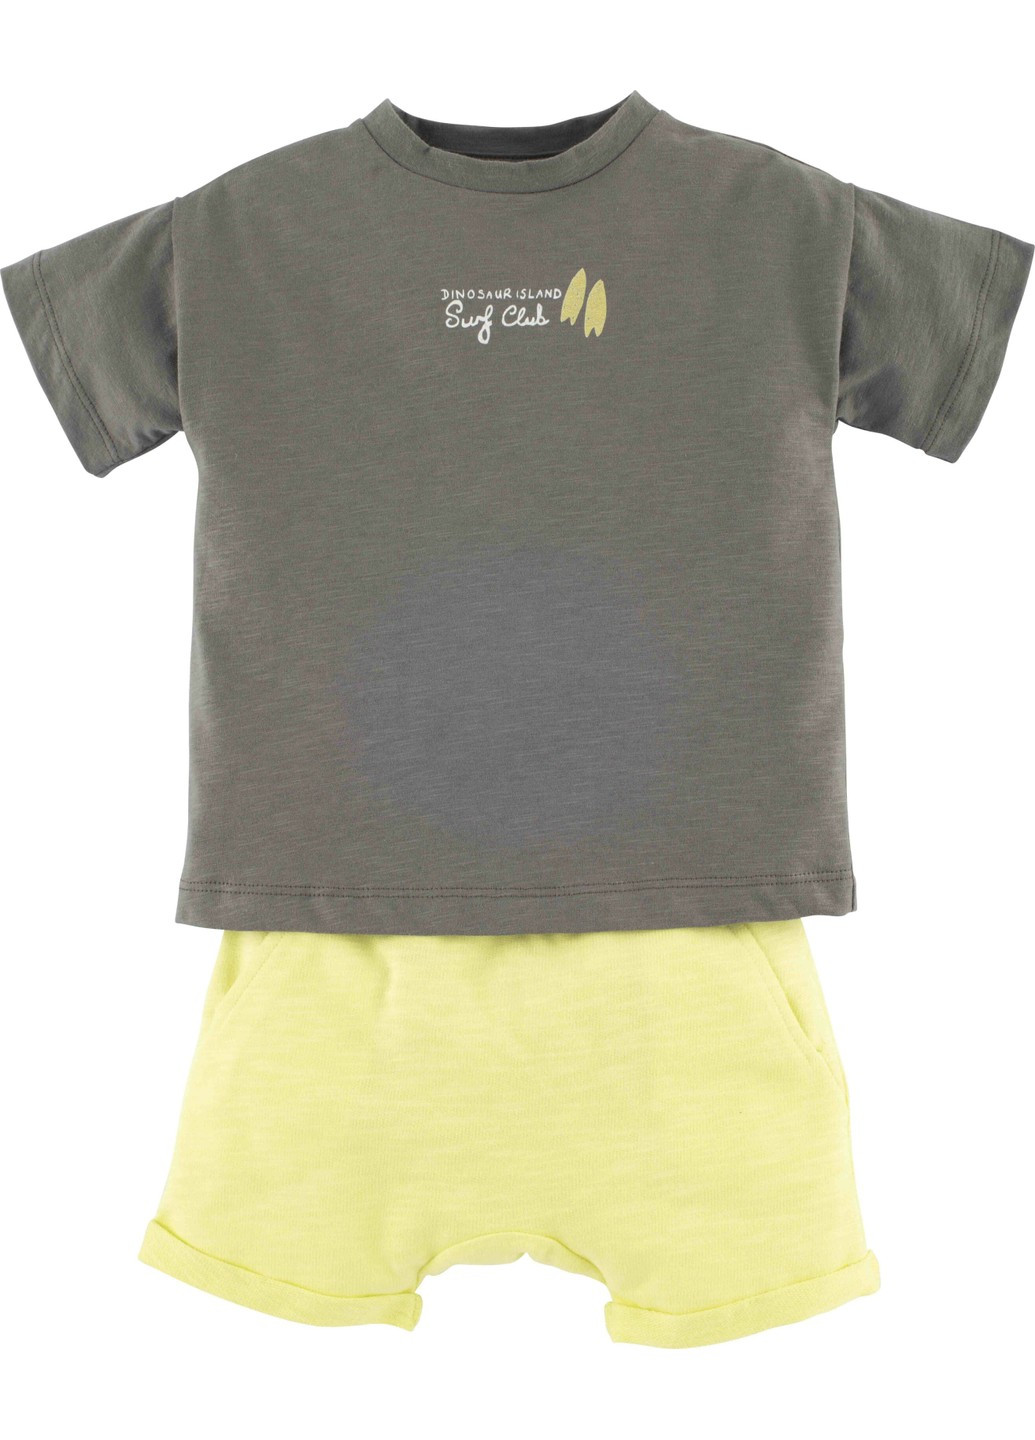 Желтый летний комплект футболка +шорти 15136 Idil Baby Mamino